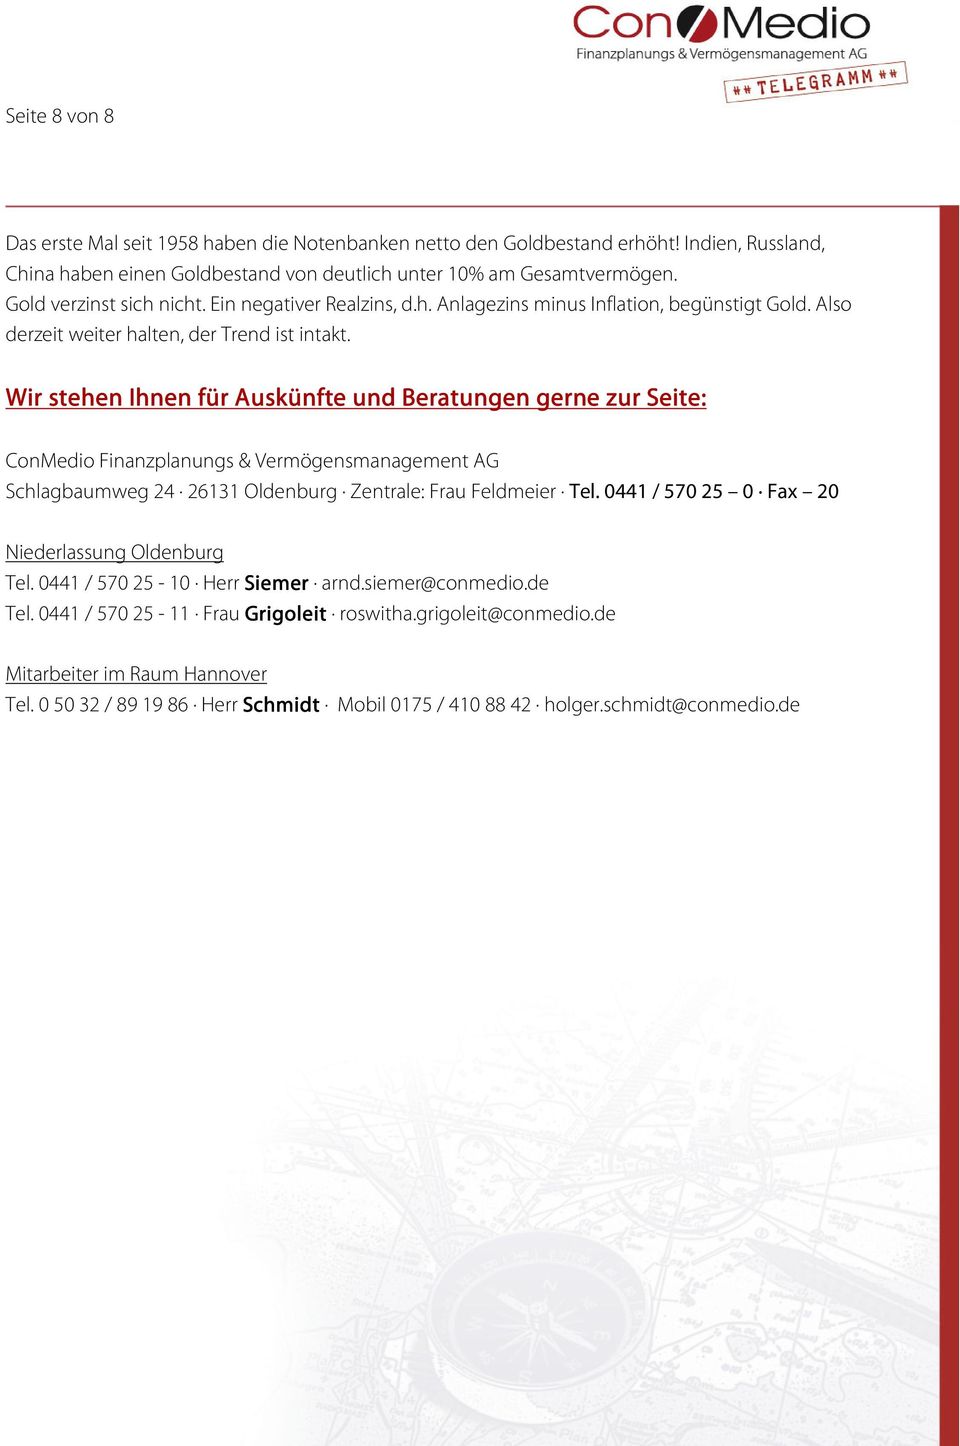 Wir stehen Ihnen für Auskünfte und Beratungen gerne zur Seite: ConMedio Finanzplanungs & Vermögensmanagement AG Schlagbaumweg 24 26131 Oldenburg Zentrale: Frau Feldmeier Tel.